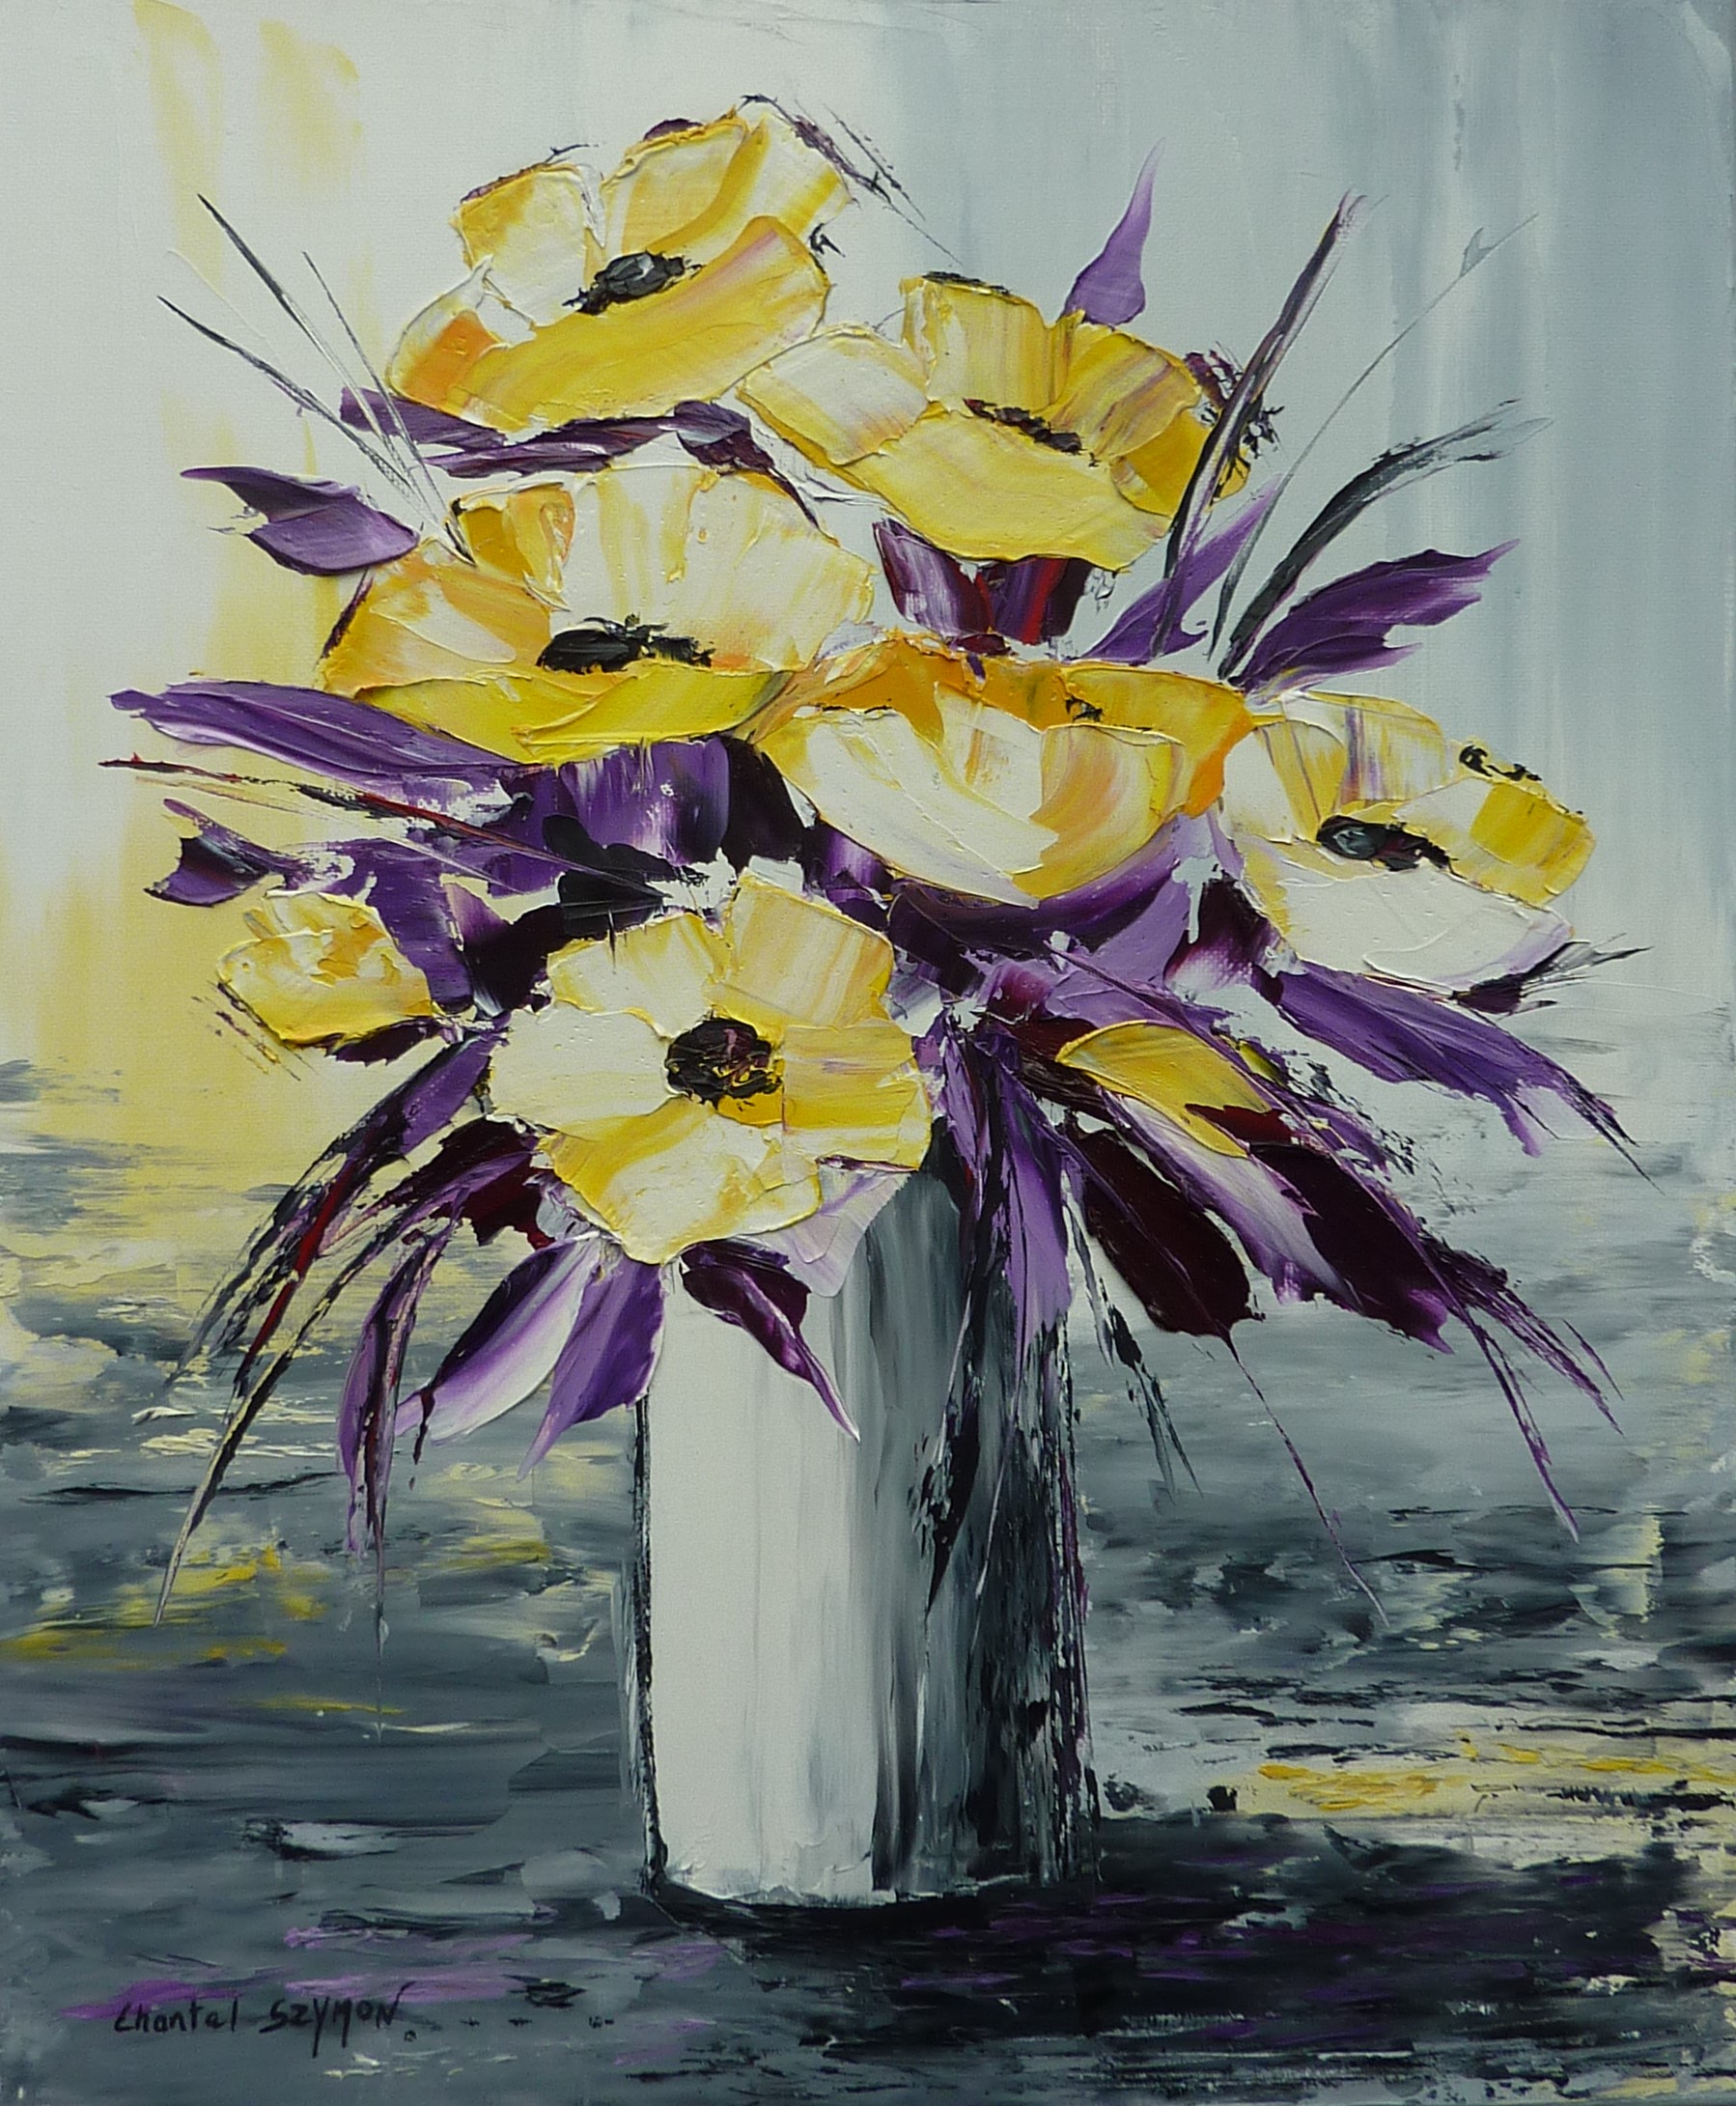 chantal szymoniak artiste peintre peinture a lhuile bouquet fleurs jaunes vase de fleurs peinture au couteau tableau a lhuile tableau gris jaune violet